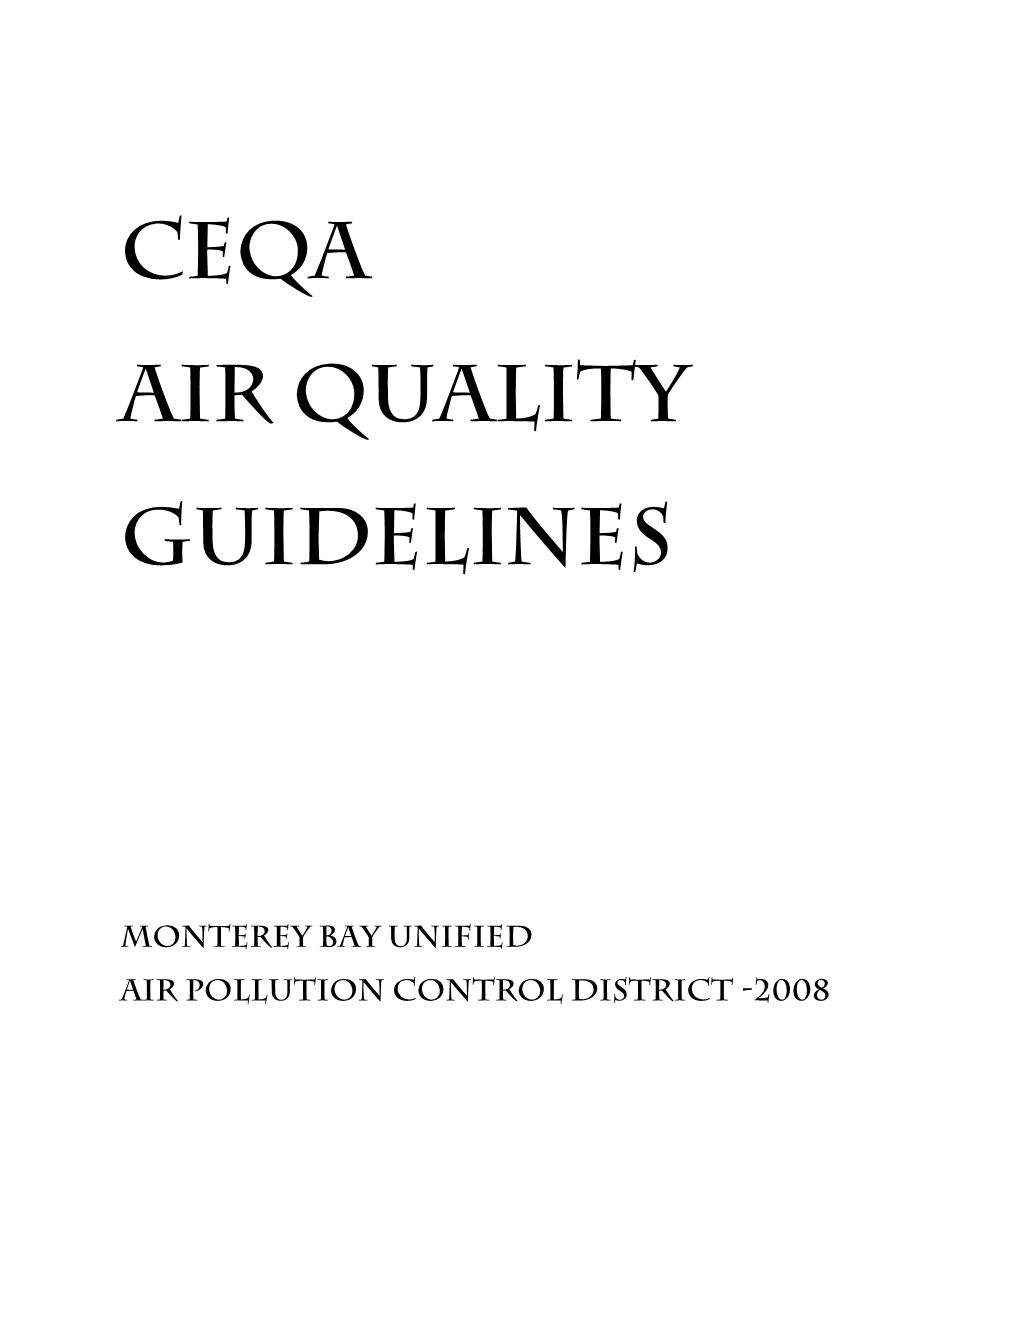 CEQA Guidelines